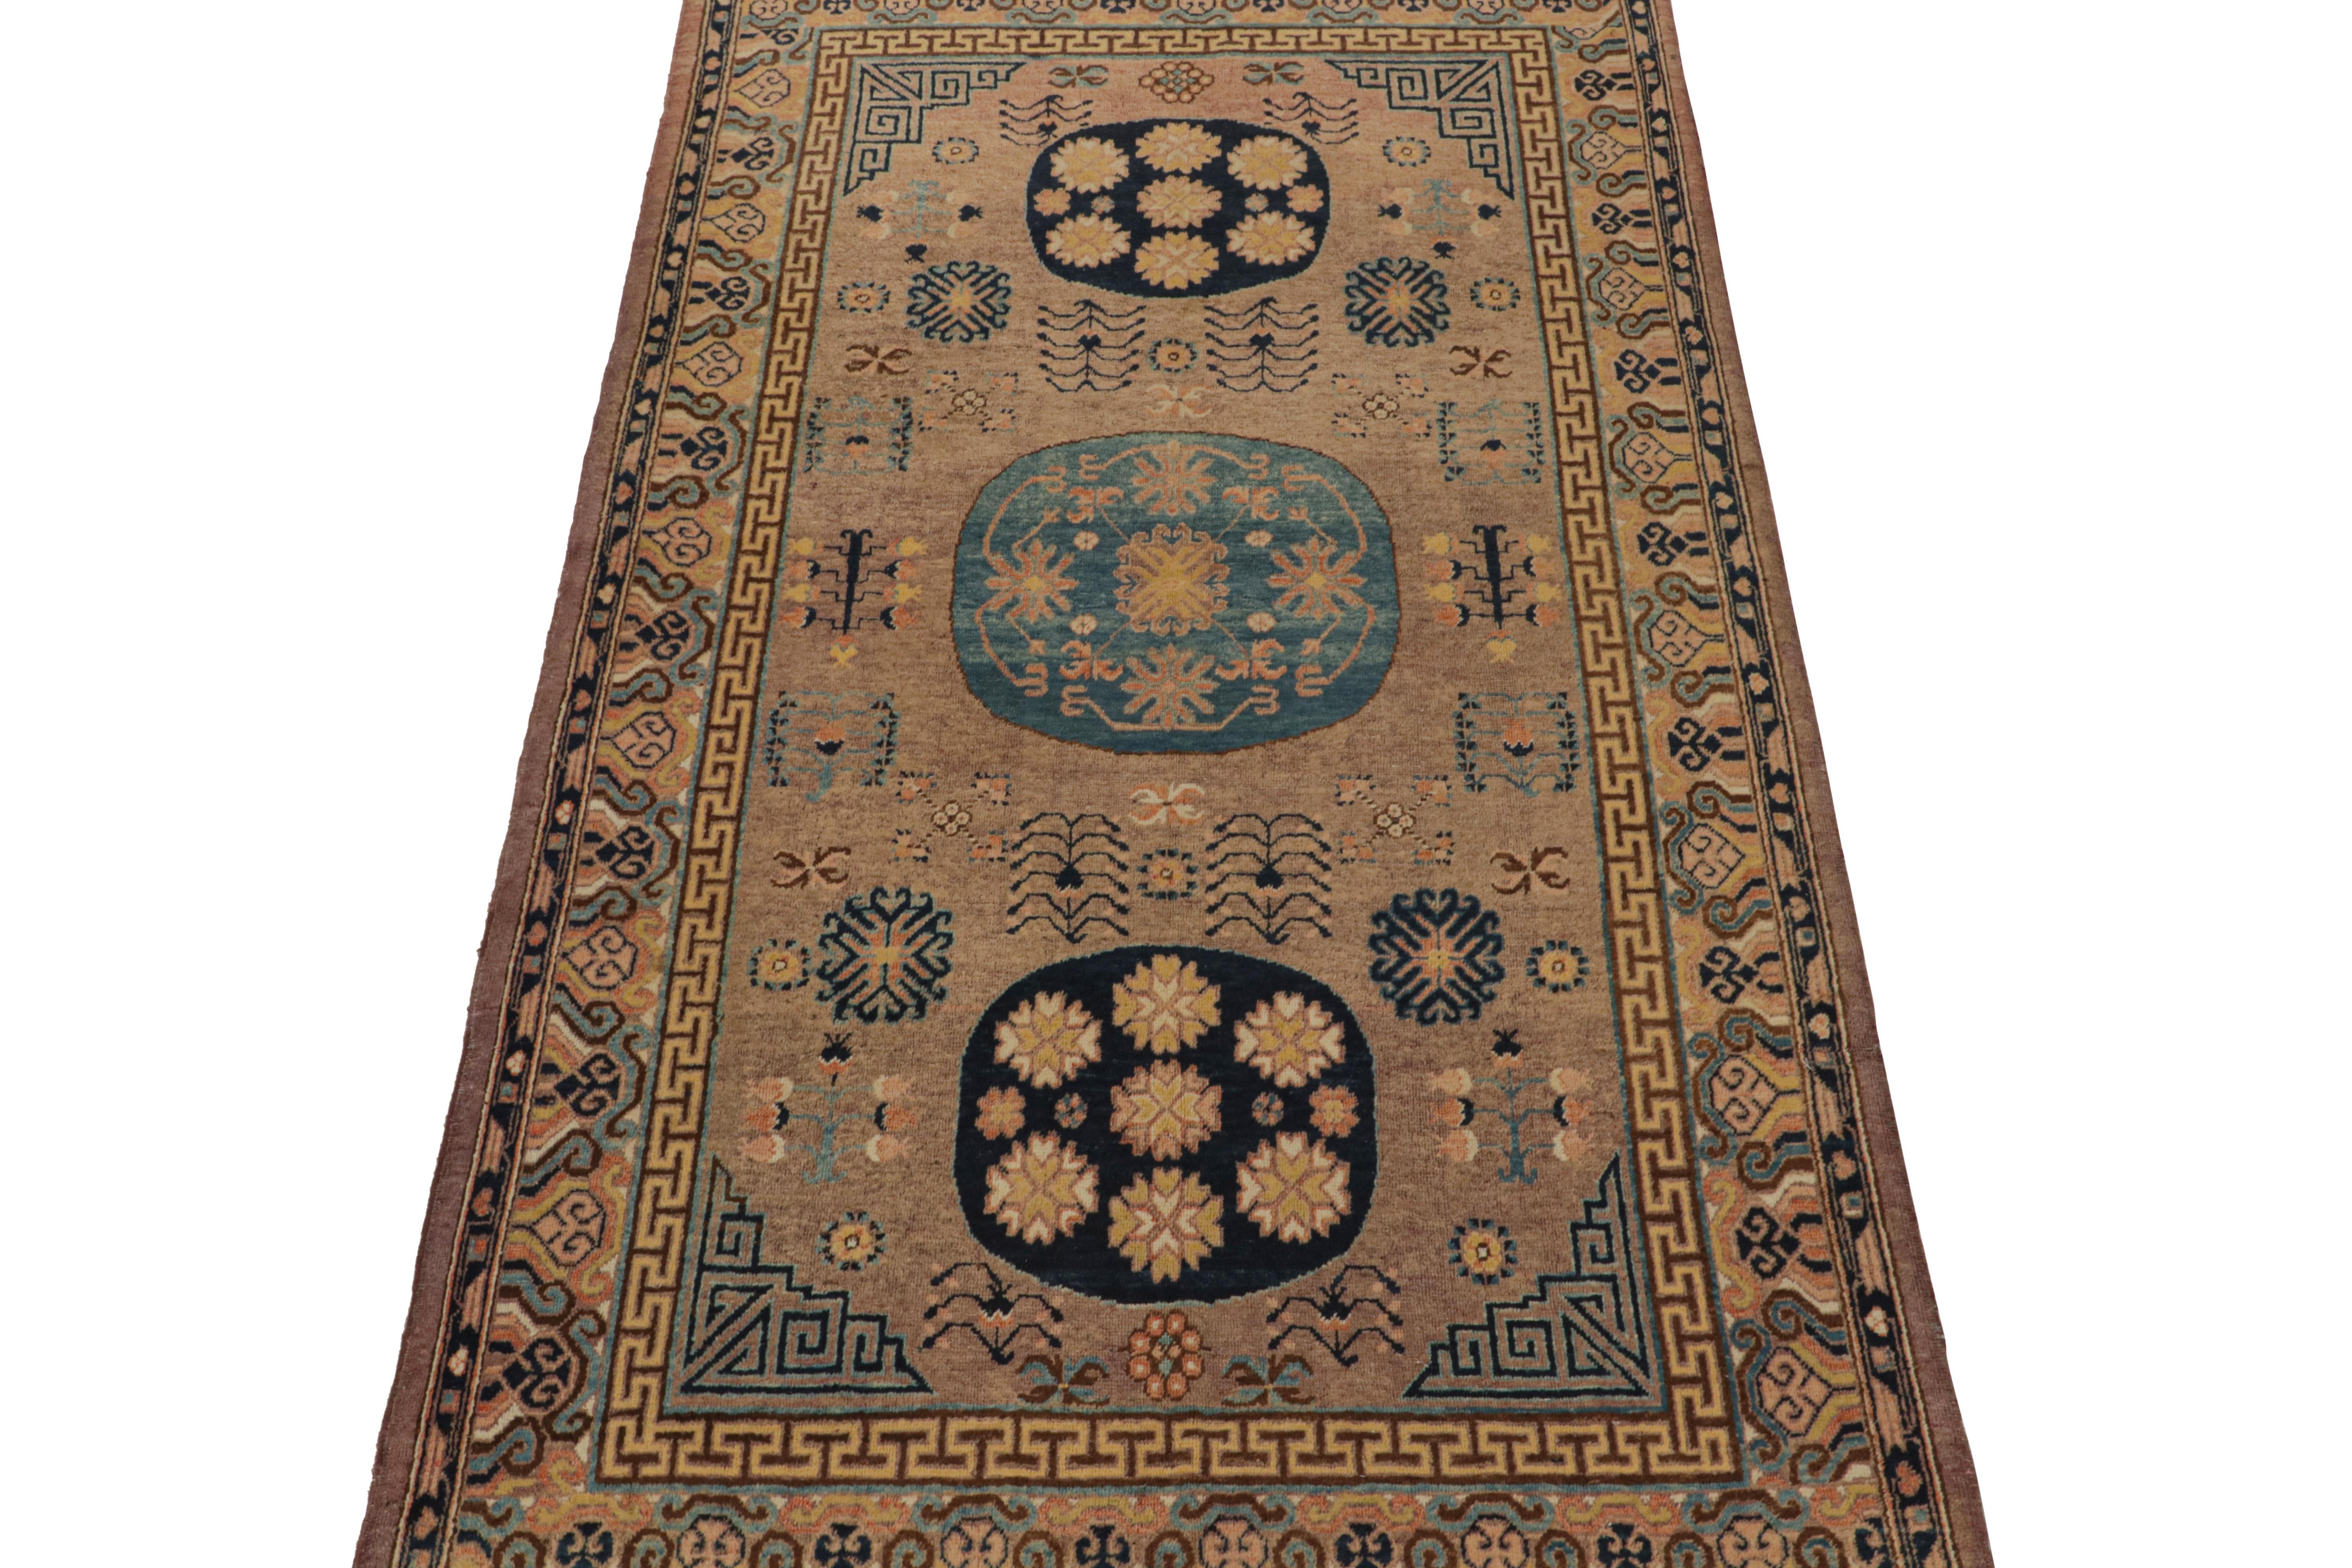 Turkestan Antique Khotan rug in Beige-Brown, Blue & Gold Medallions, from Rug & Kilim For Sale